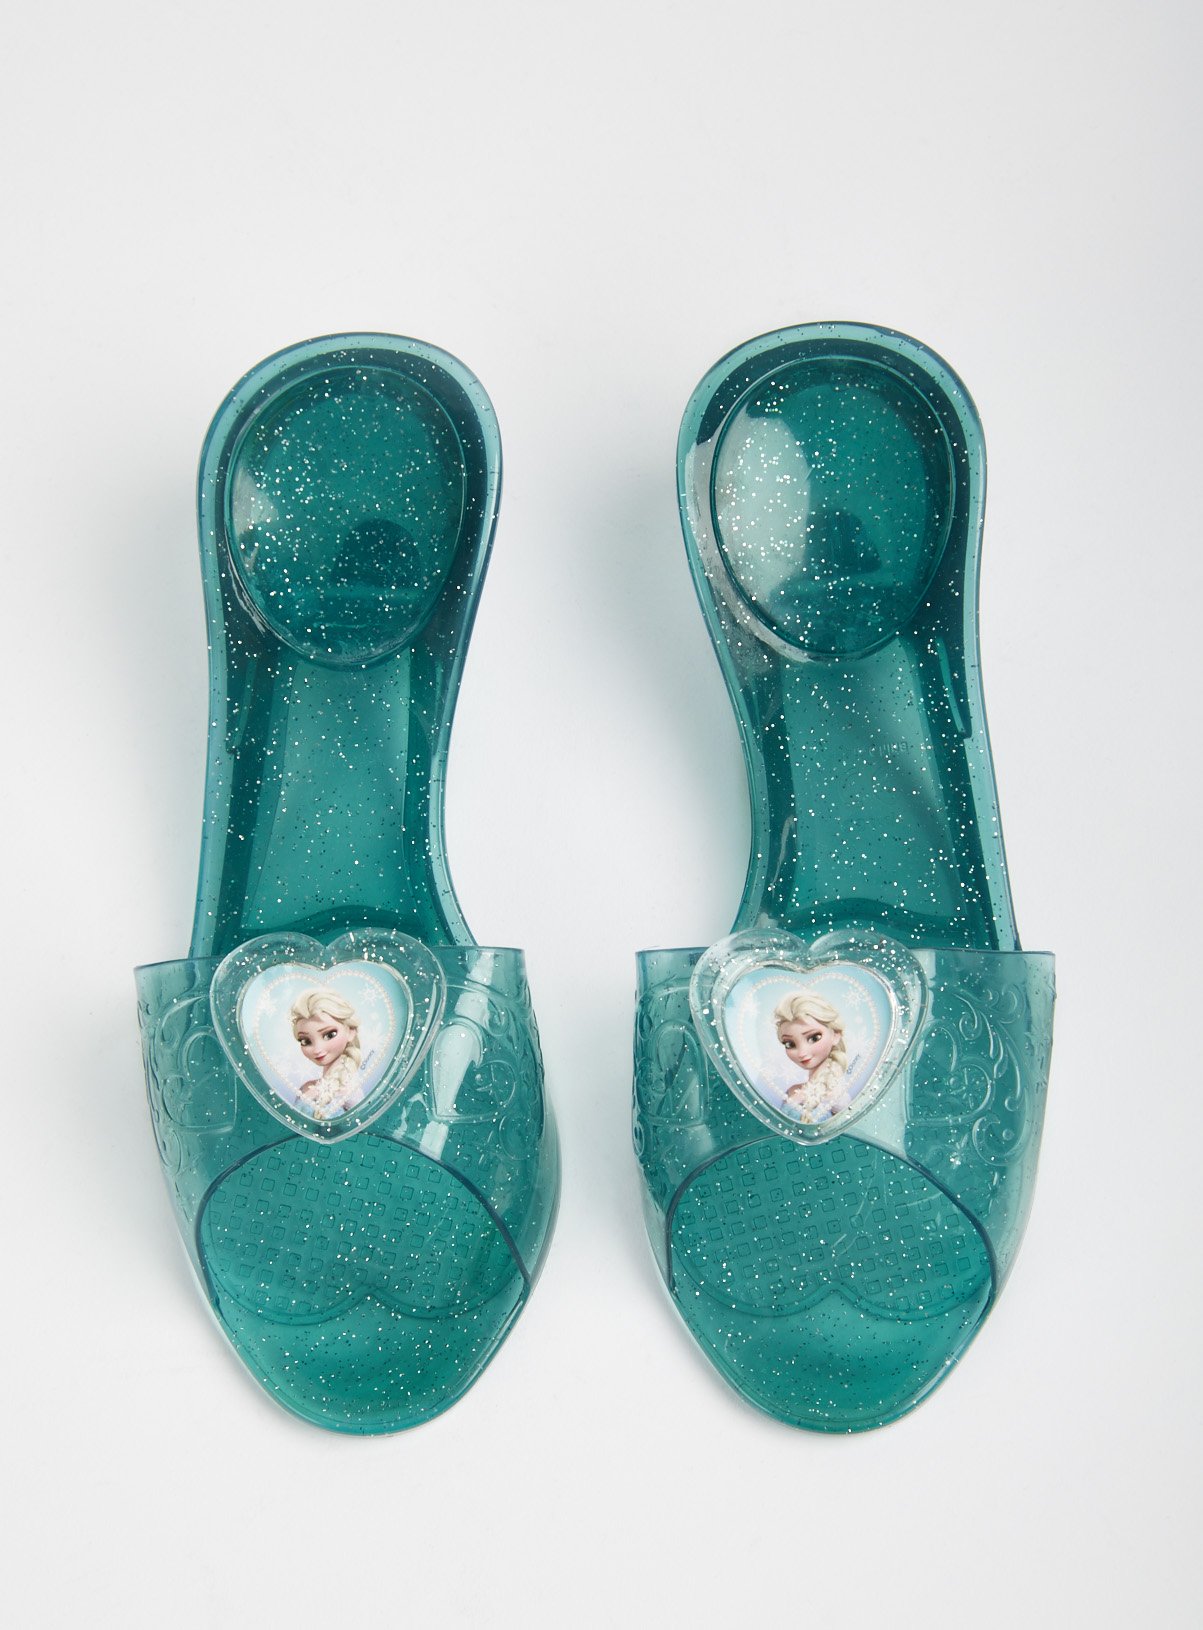 RUBIE'S Disney Frozen Blue Elsa Jelly Shoes Review